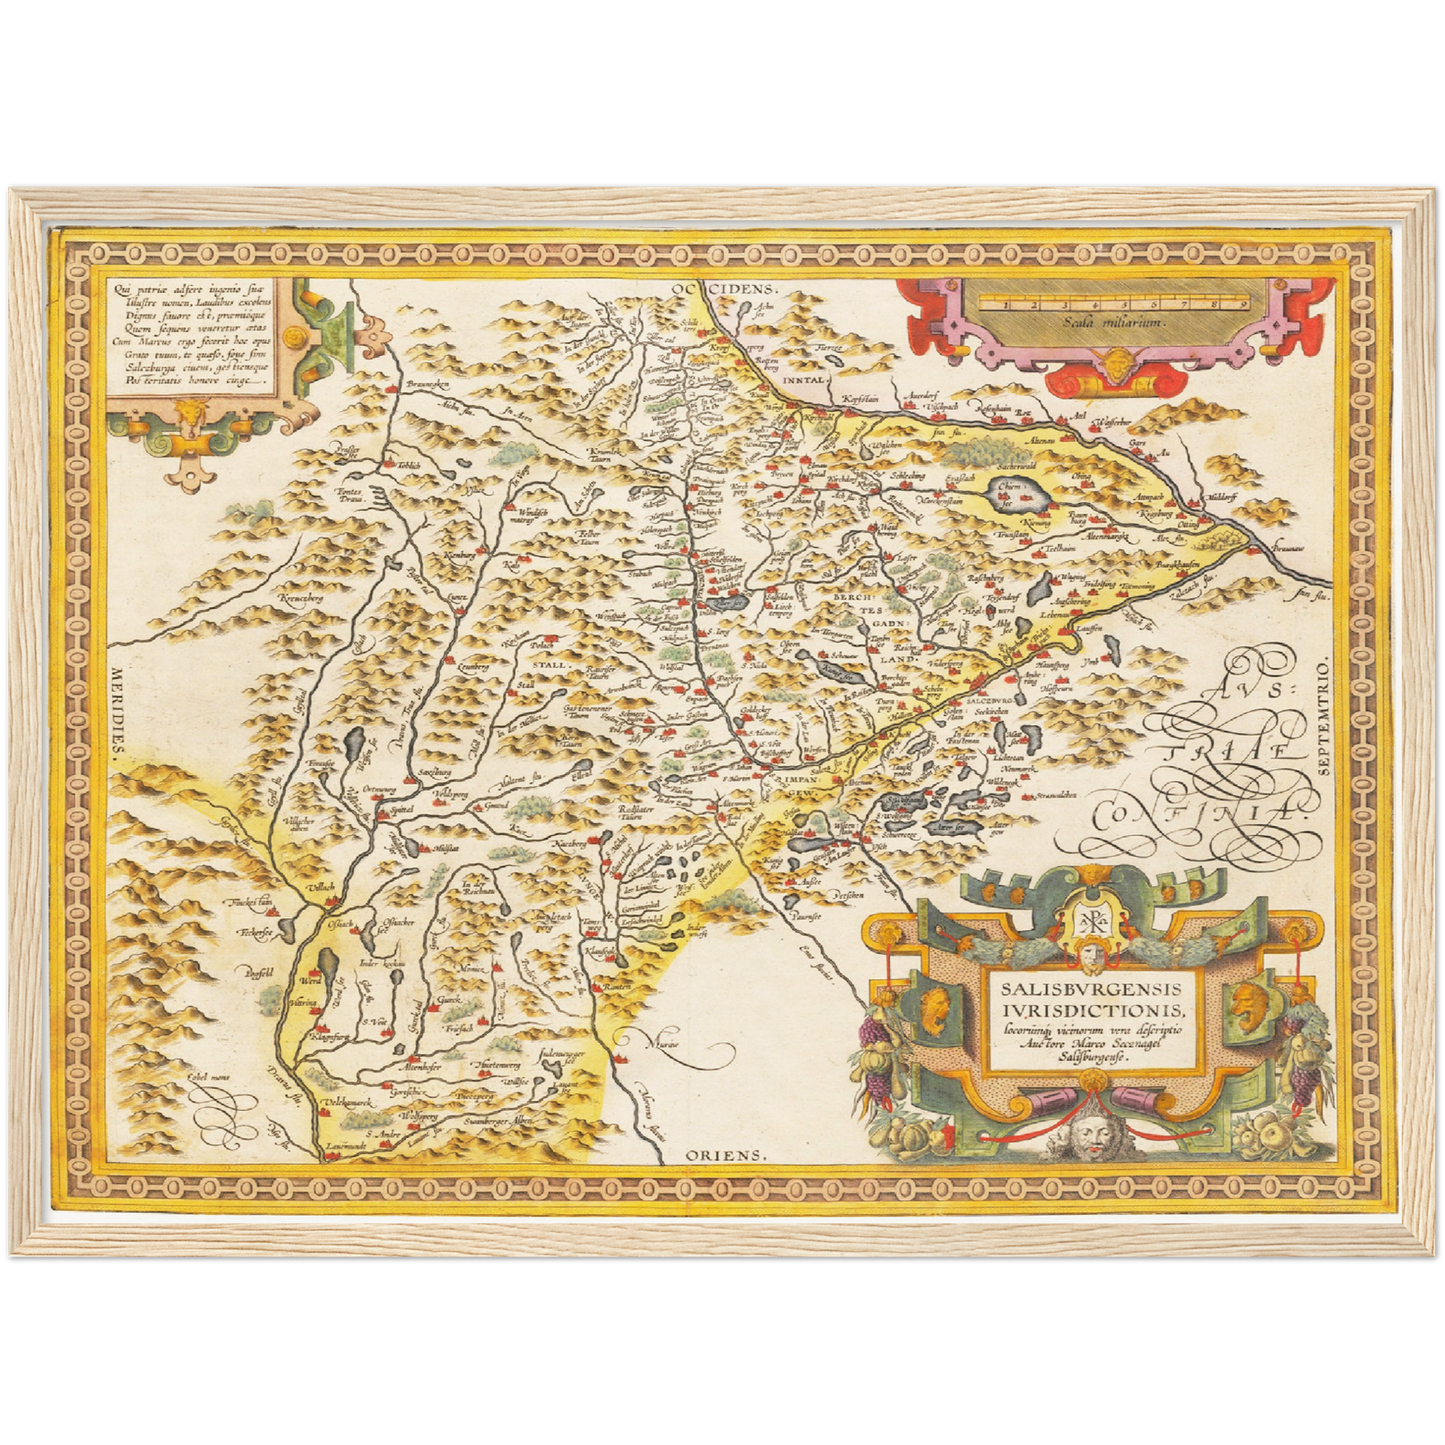 Historische Landkarte Salzburger Land um 1609